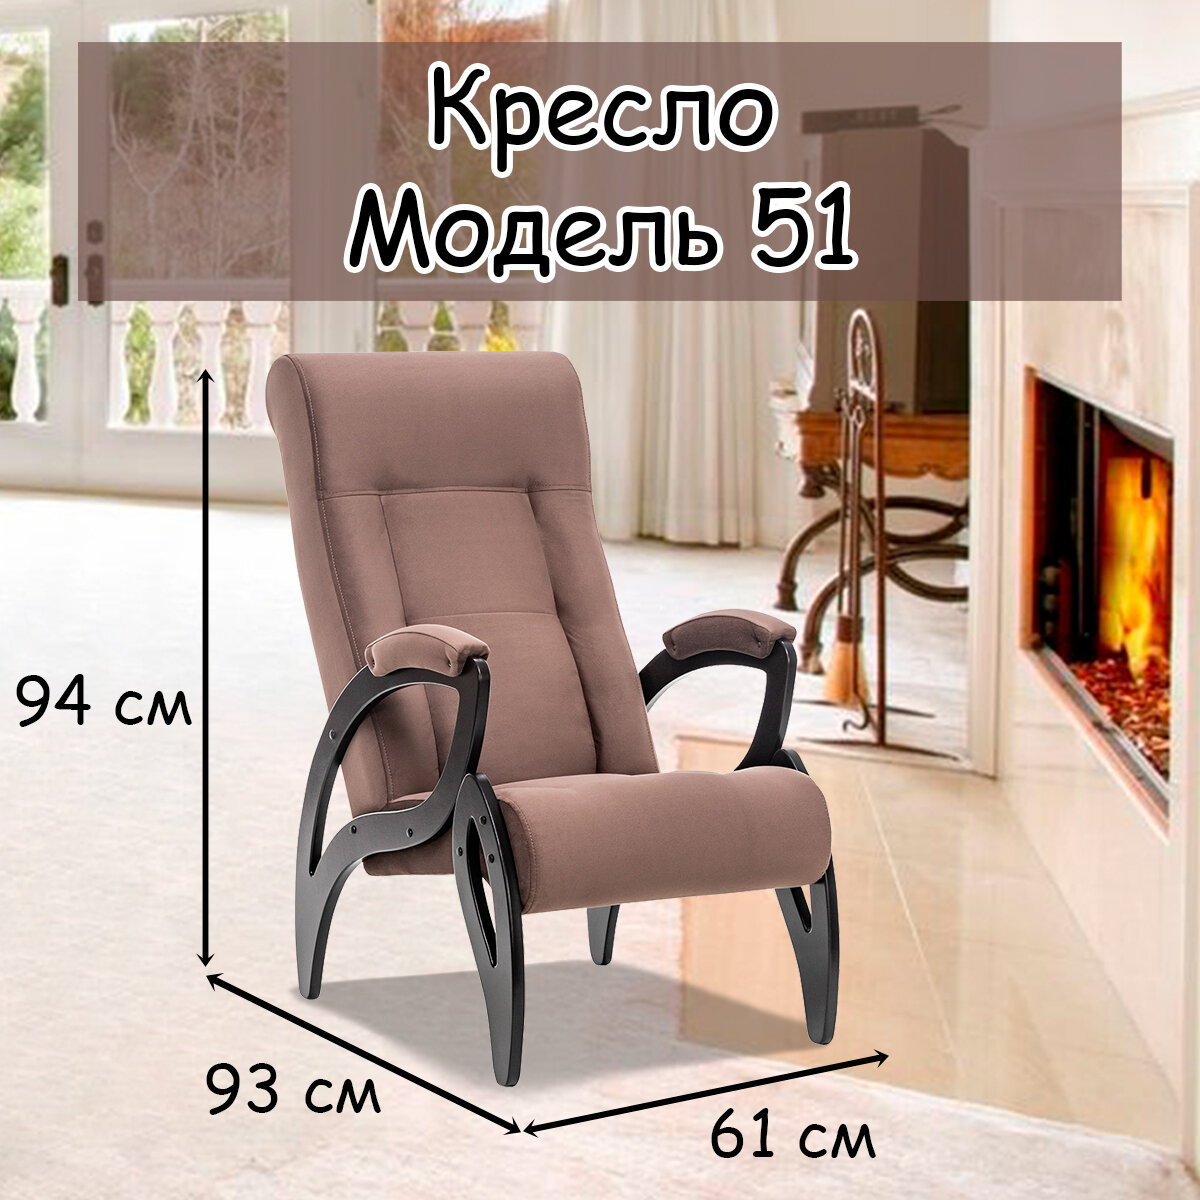 Кресло для взрослых 58.5х87х99 см, модель 51, maxx, цвет: Maxx 235 (коричневый), каркас: Venge (черный) - фотография № 1